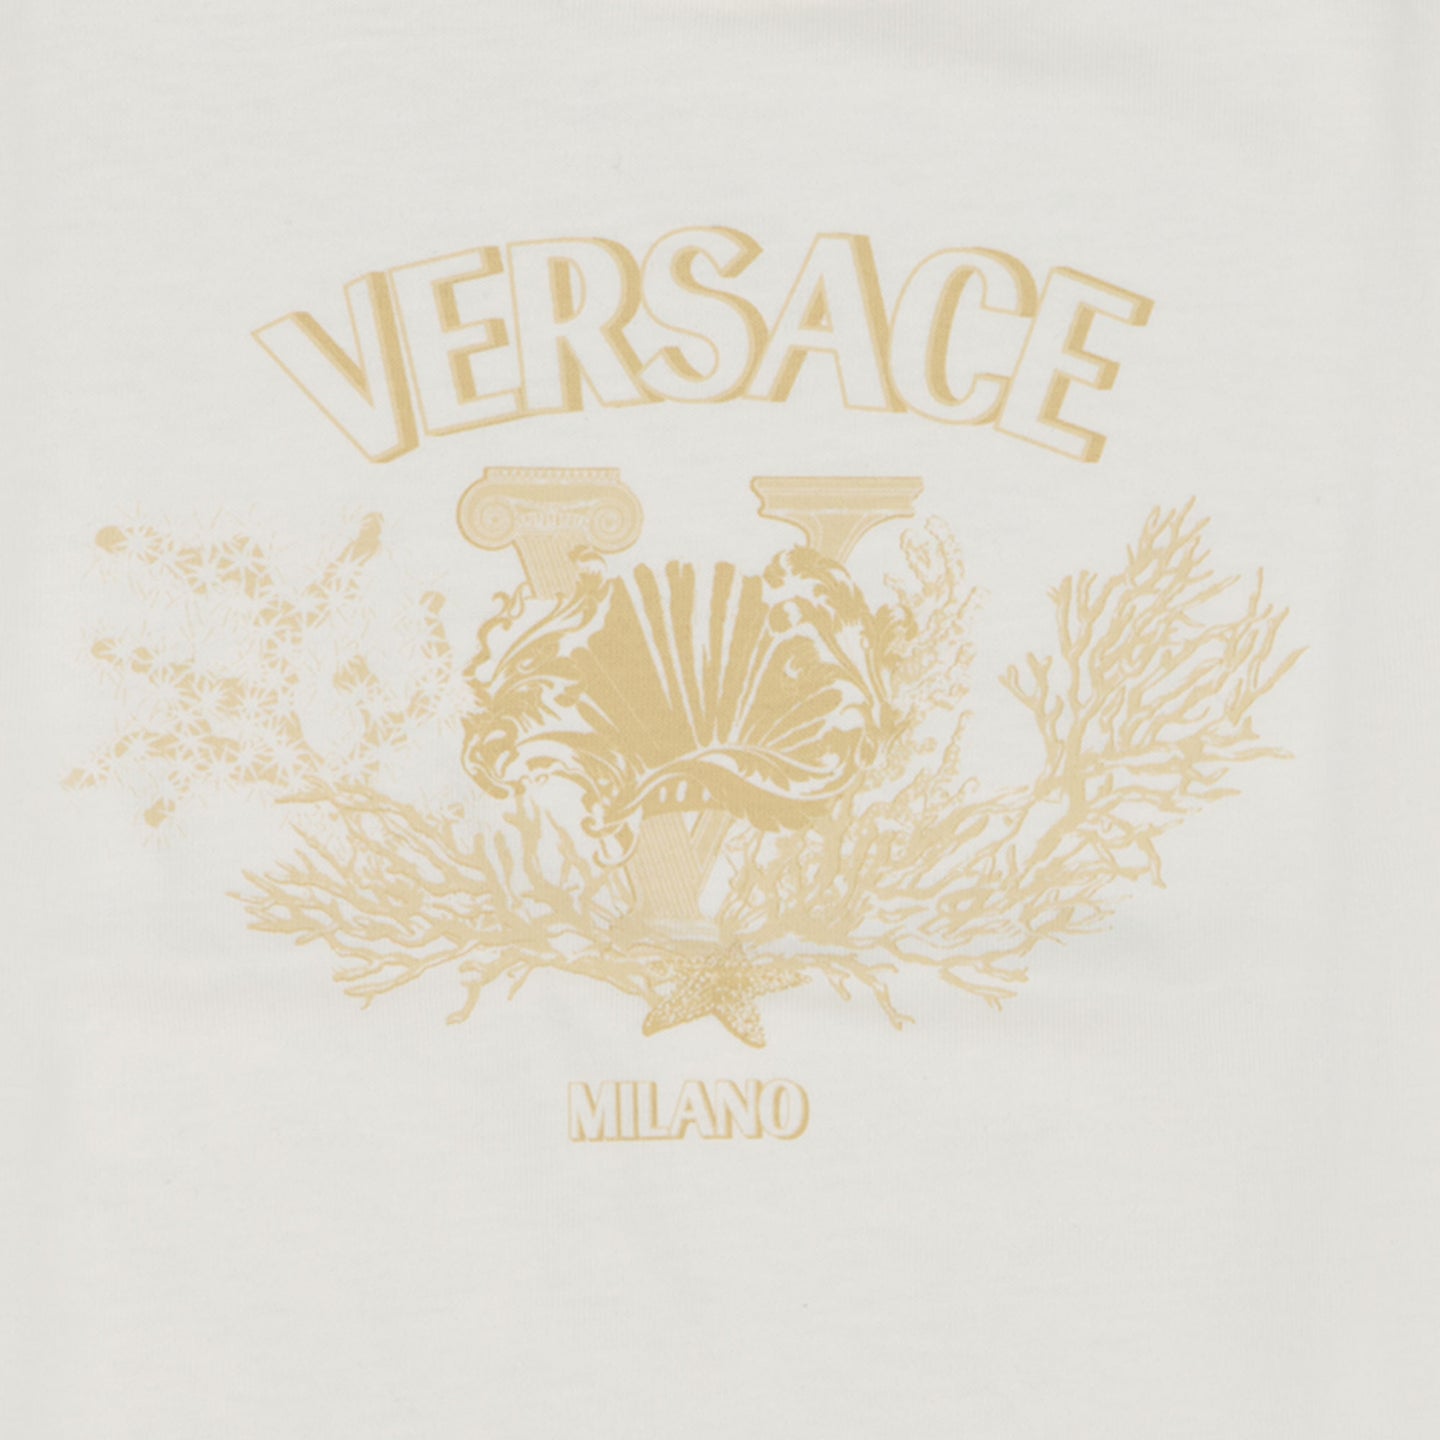 Versace Baby Unisex T-Shirt Weiß